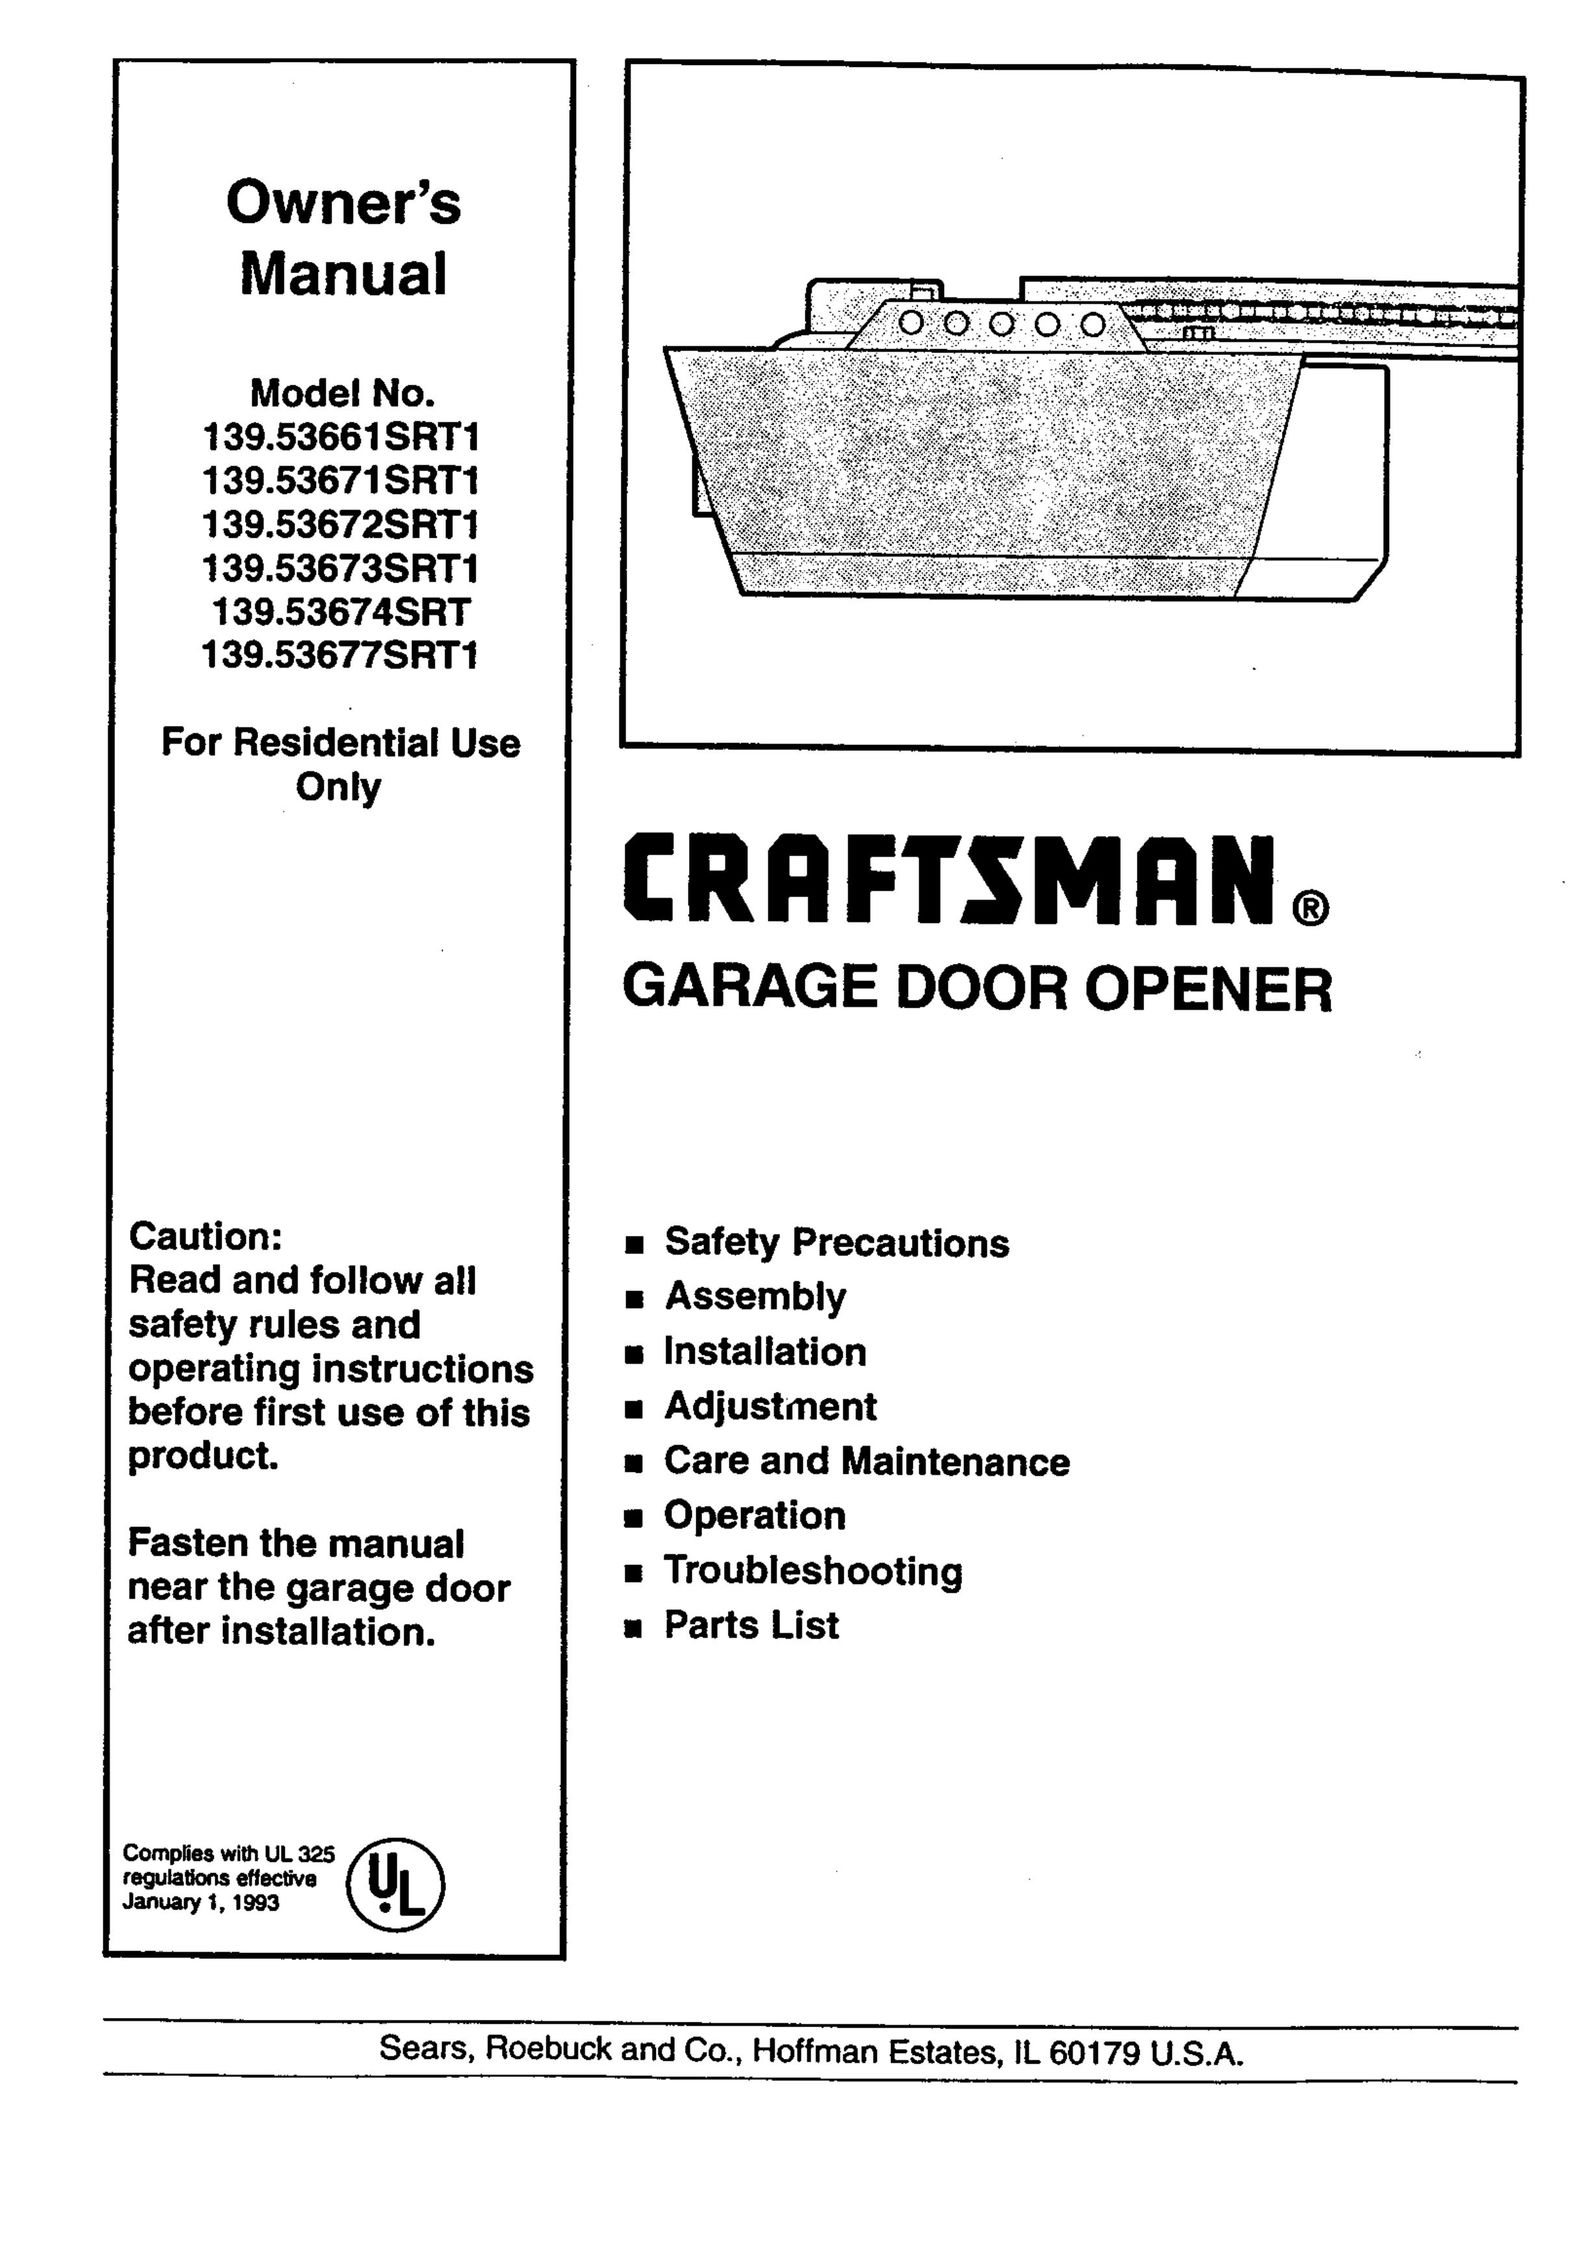 Craftsman 139.53674SRT Garage Door Opener User Manual